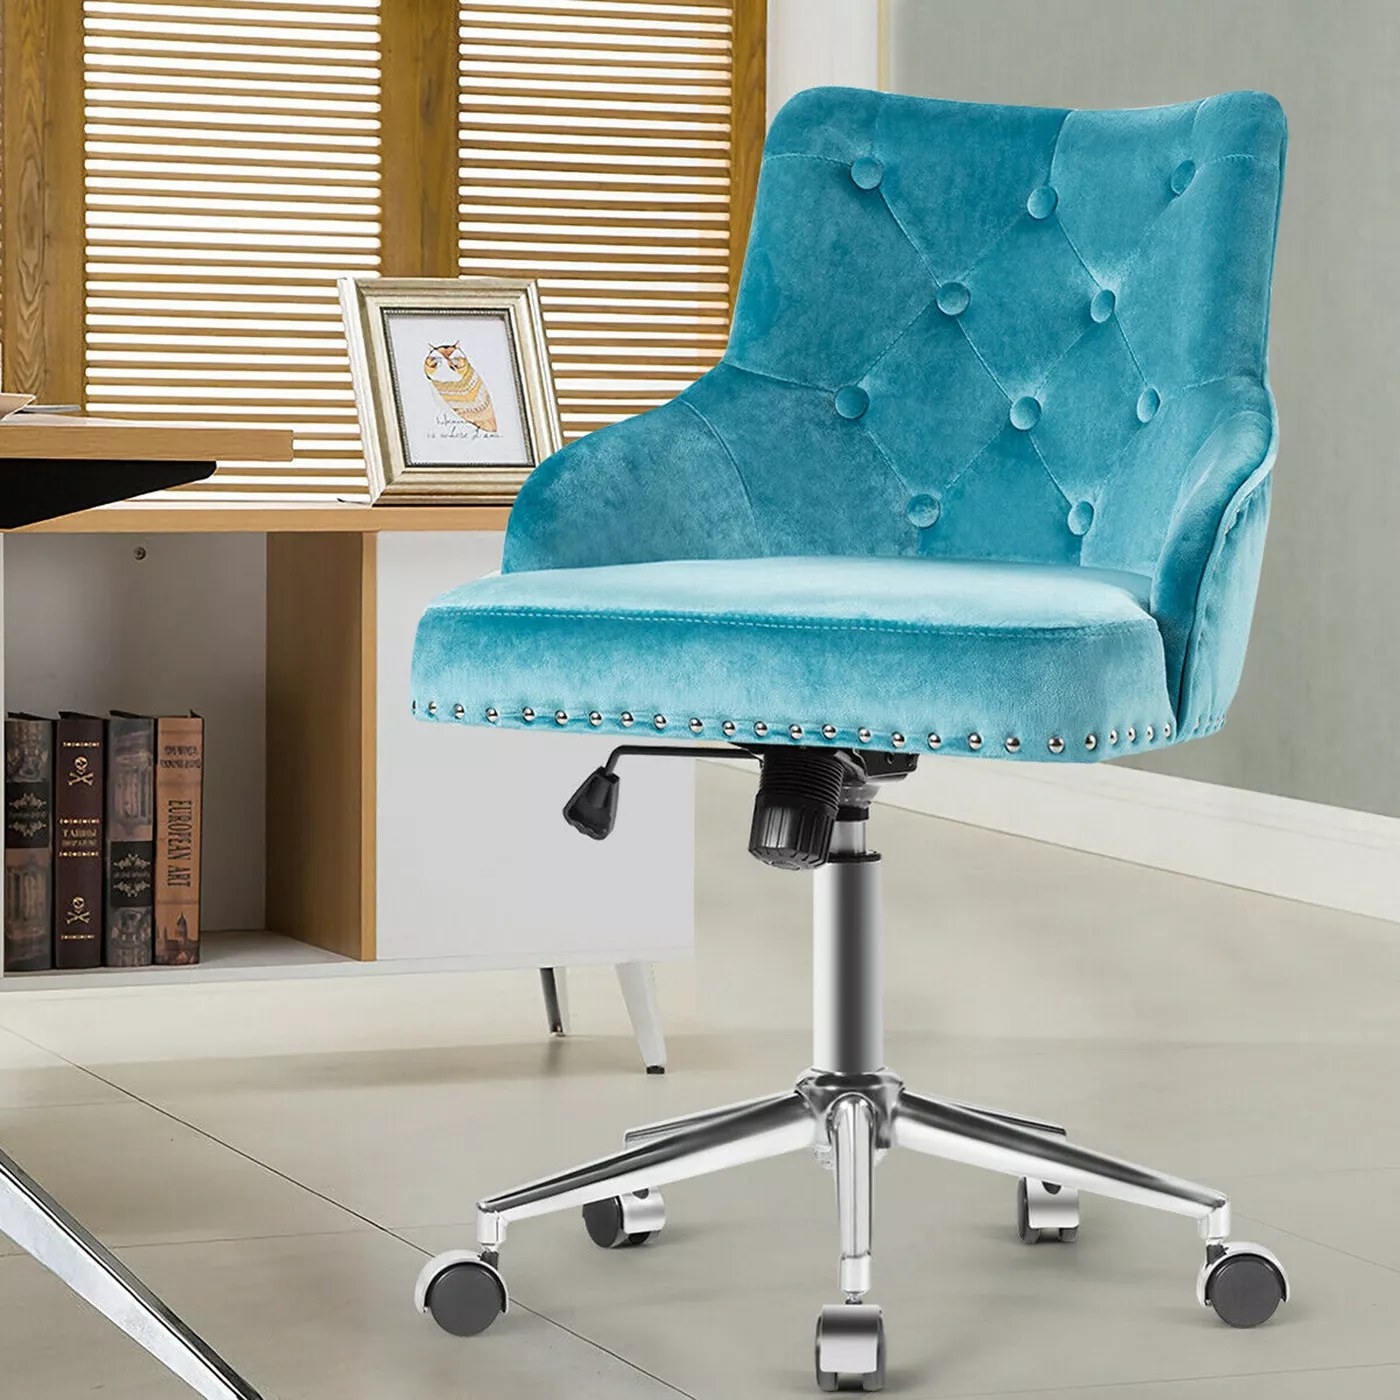 The velvet turquoise office chair